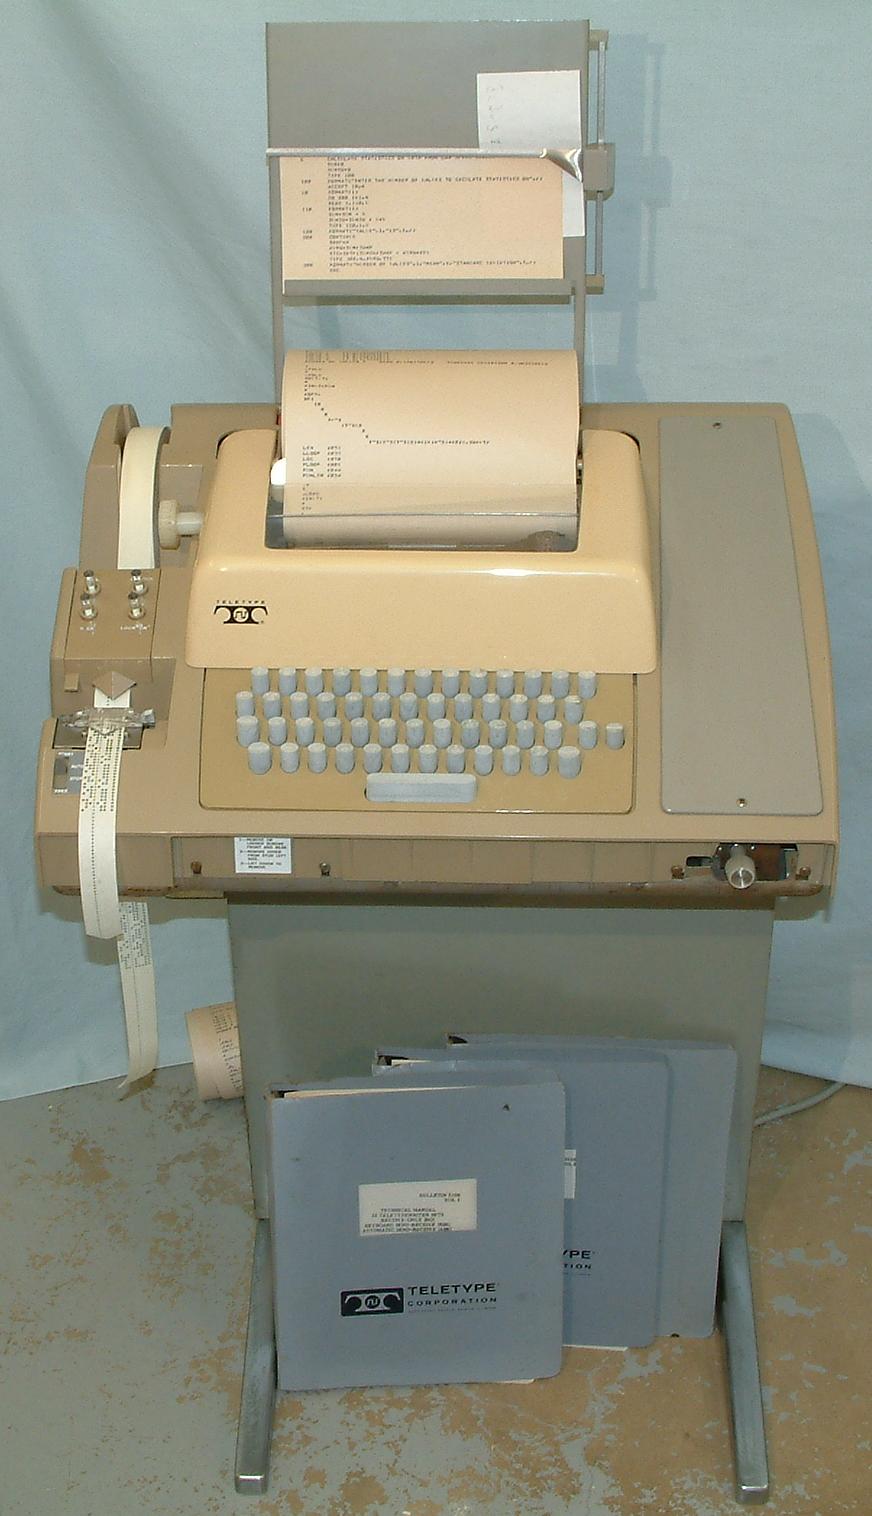 ASR-33 Teletype.